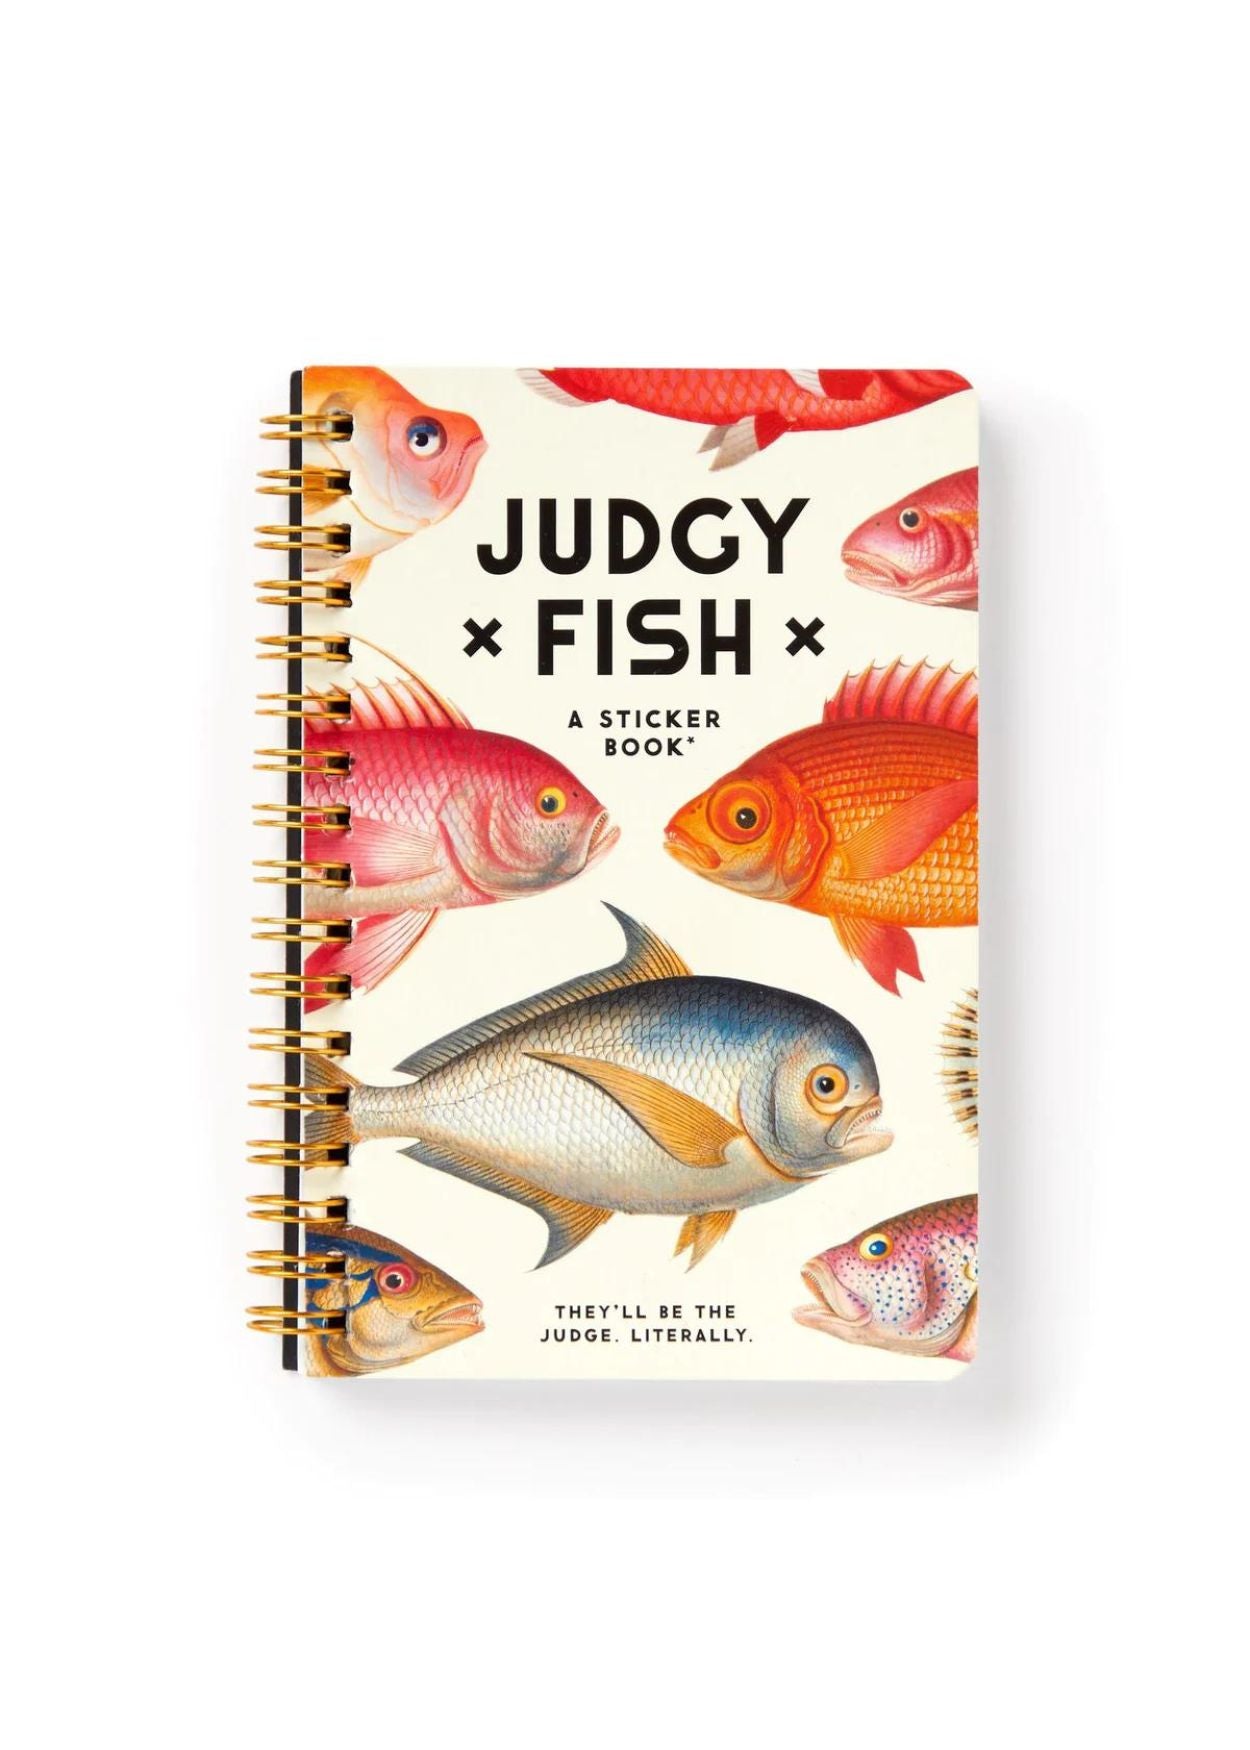 JUDGY FISH STICKER BOOK